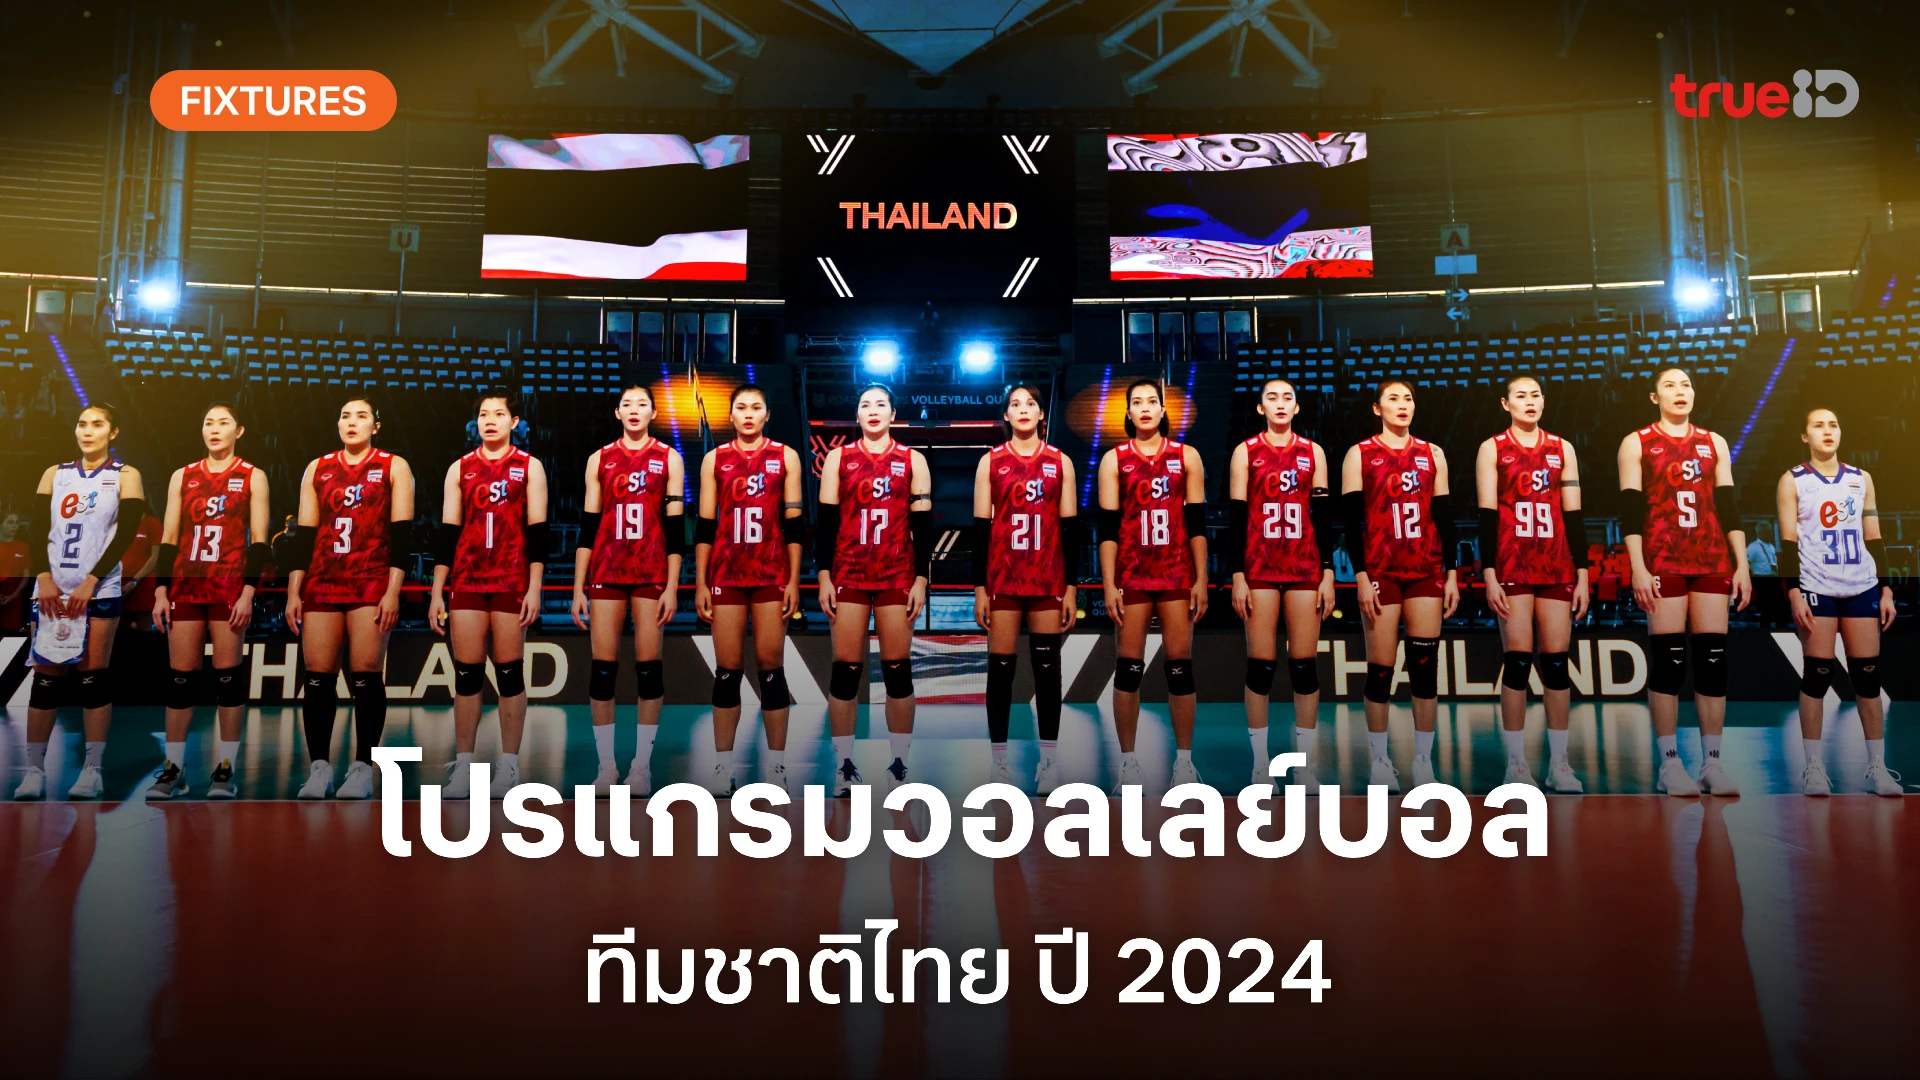 ผลและโปรแกรมแข่งขัน วอลเลย์บอลหญิงทีมชาติไทย ตลอดปี 2024 (ลิ้งก์ดูสด)